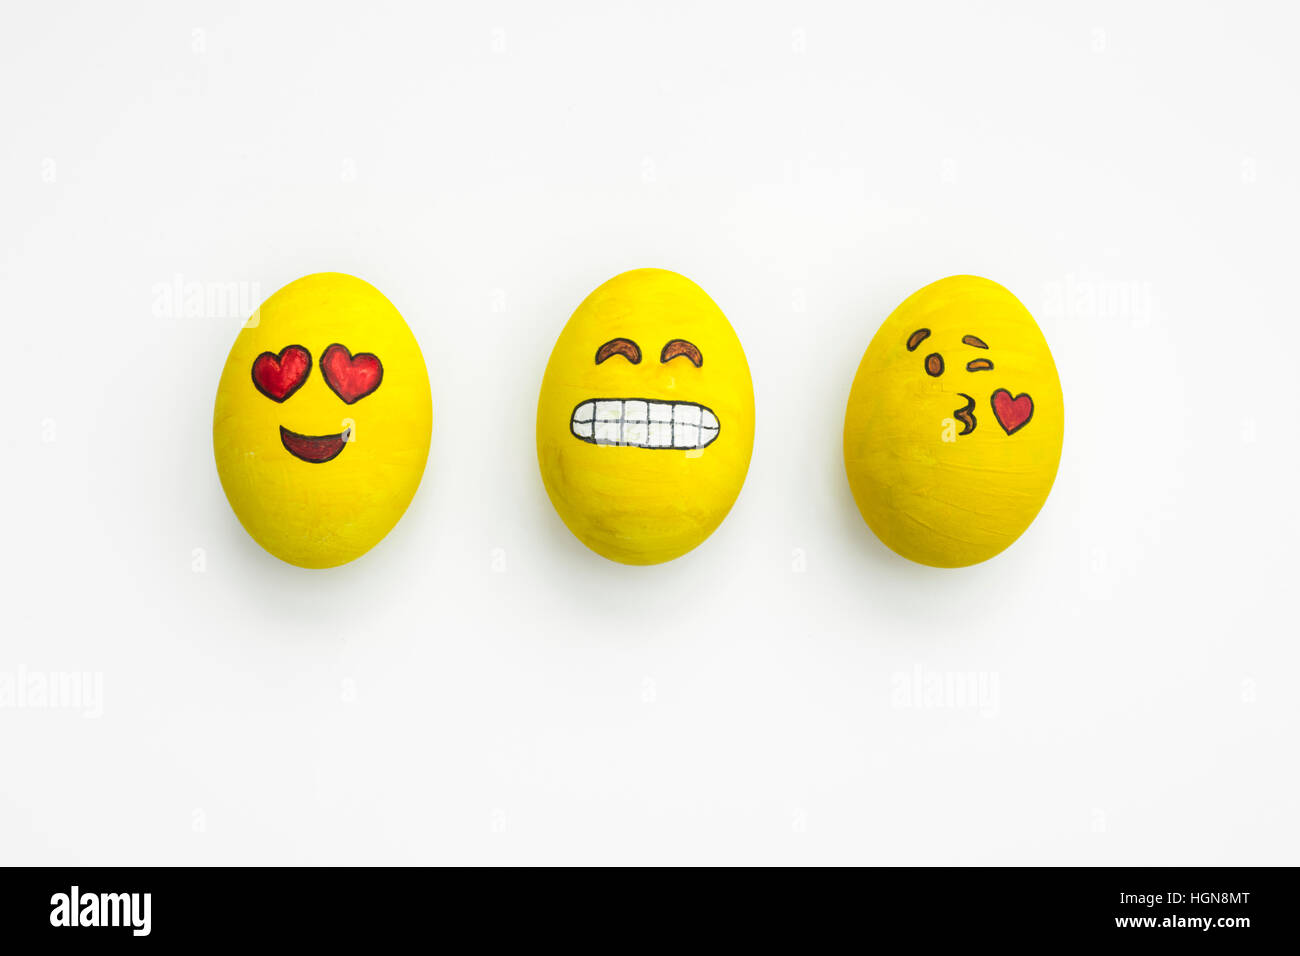 El emoji de la Isla de Pascua que carece de emoción y expresividad